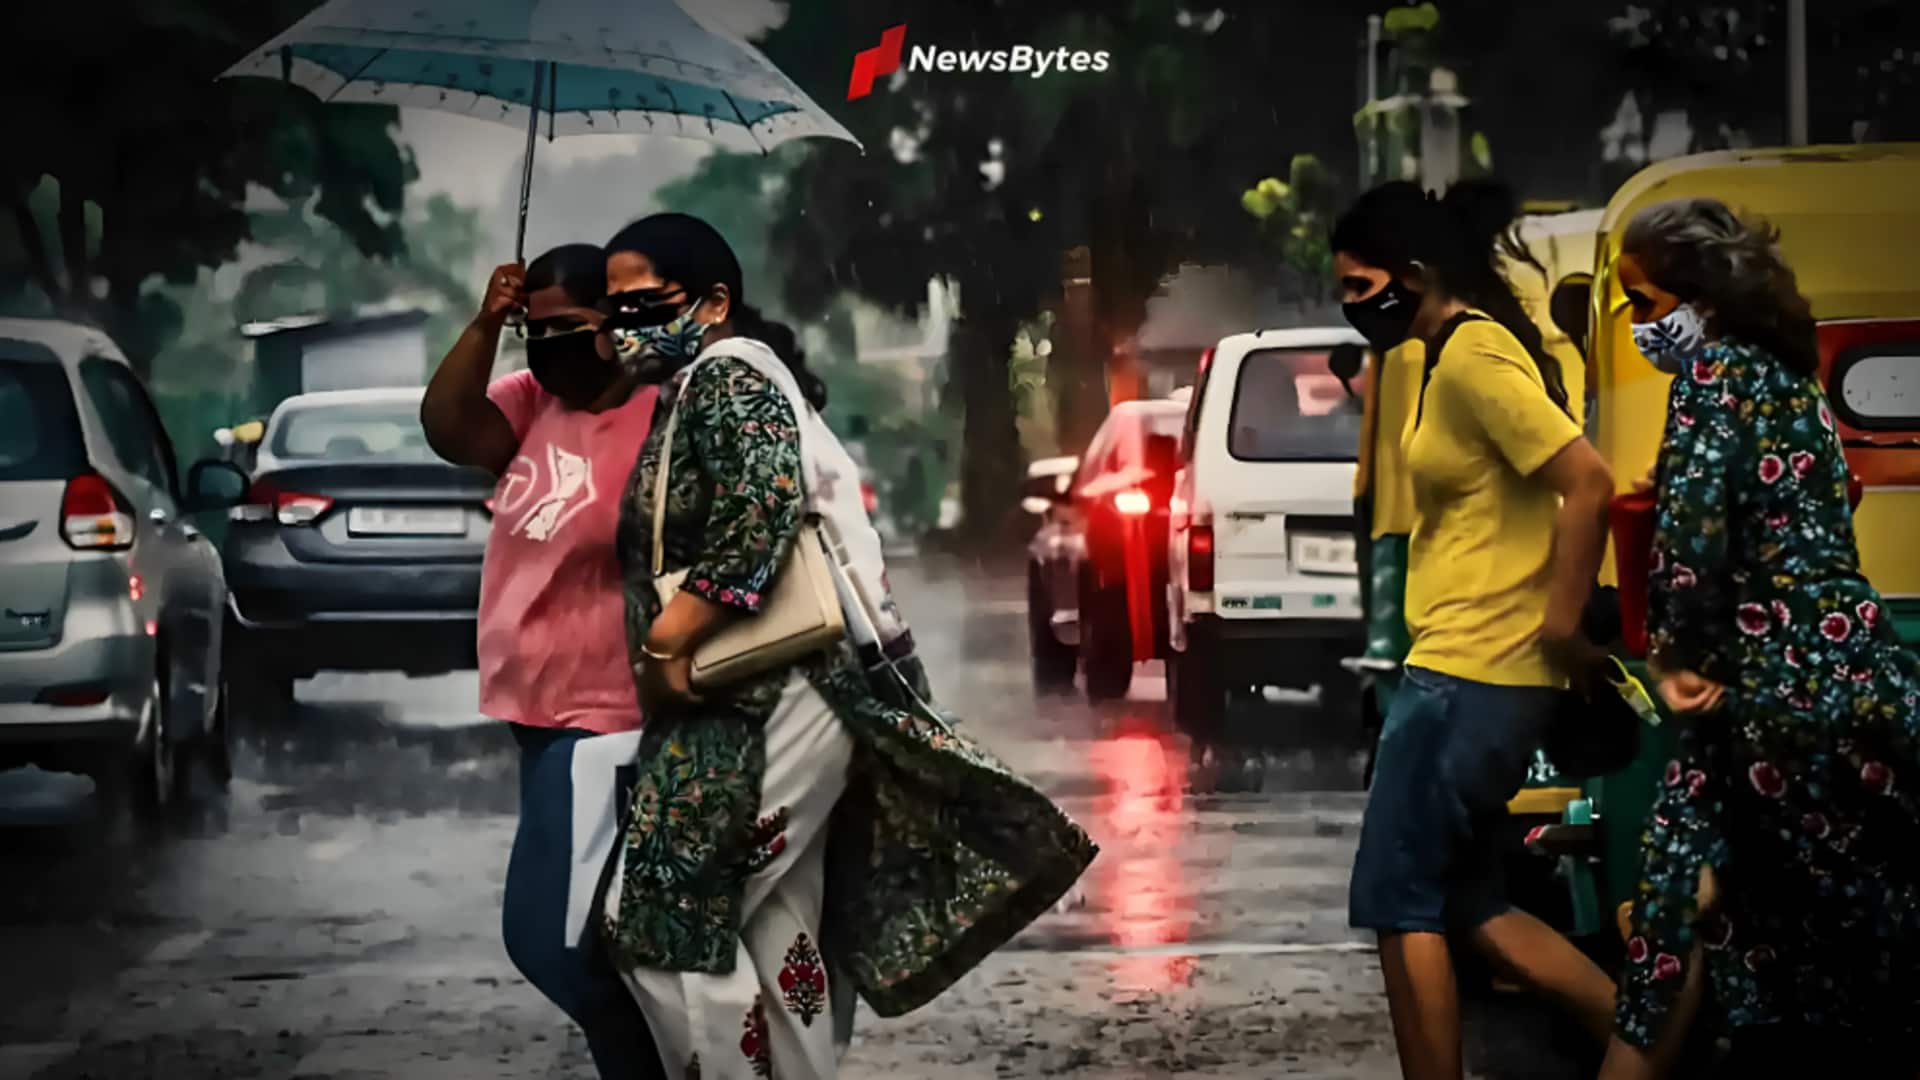 दिल्ली के मुंगेशपुरा में अधिकतम तापमान 52 डिग्री के पार पहुंचा, कई इलाकों में बारिश 